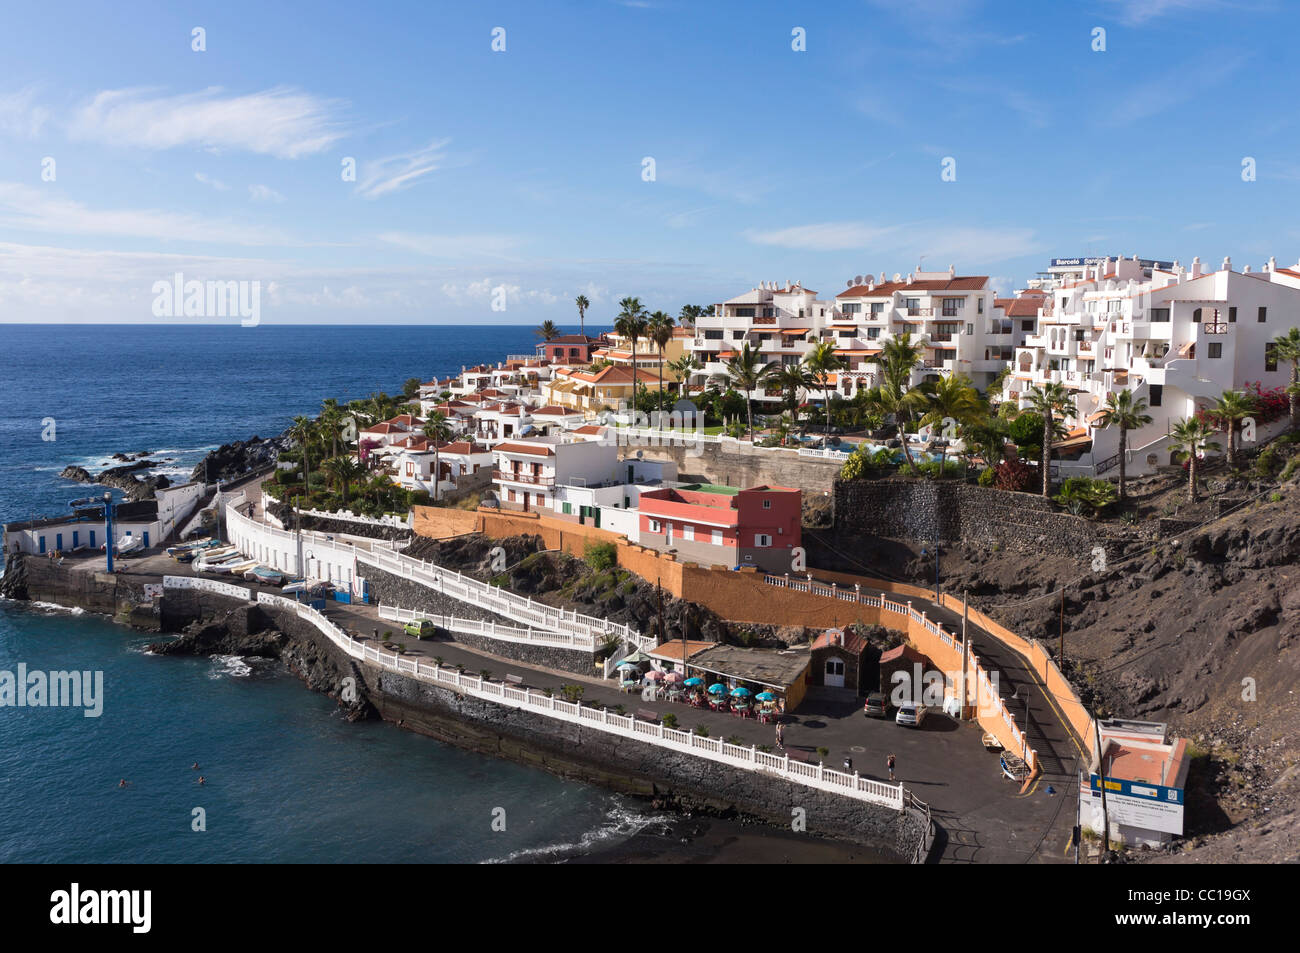 Puerto de Santiago, Tenerife - harbour. Stock Photo